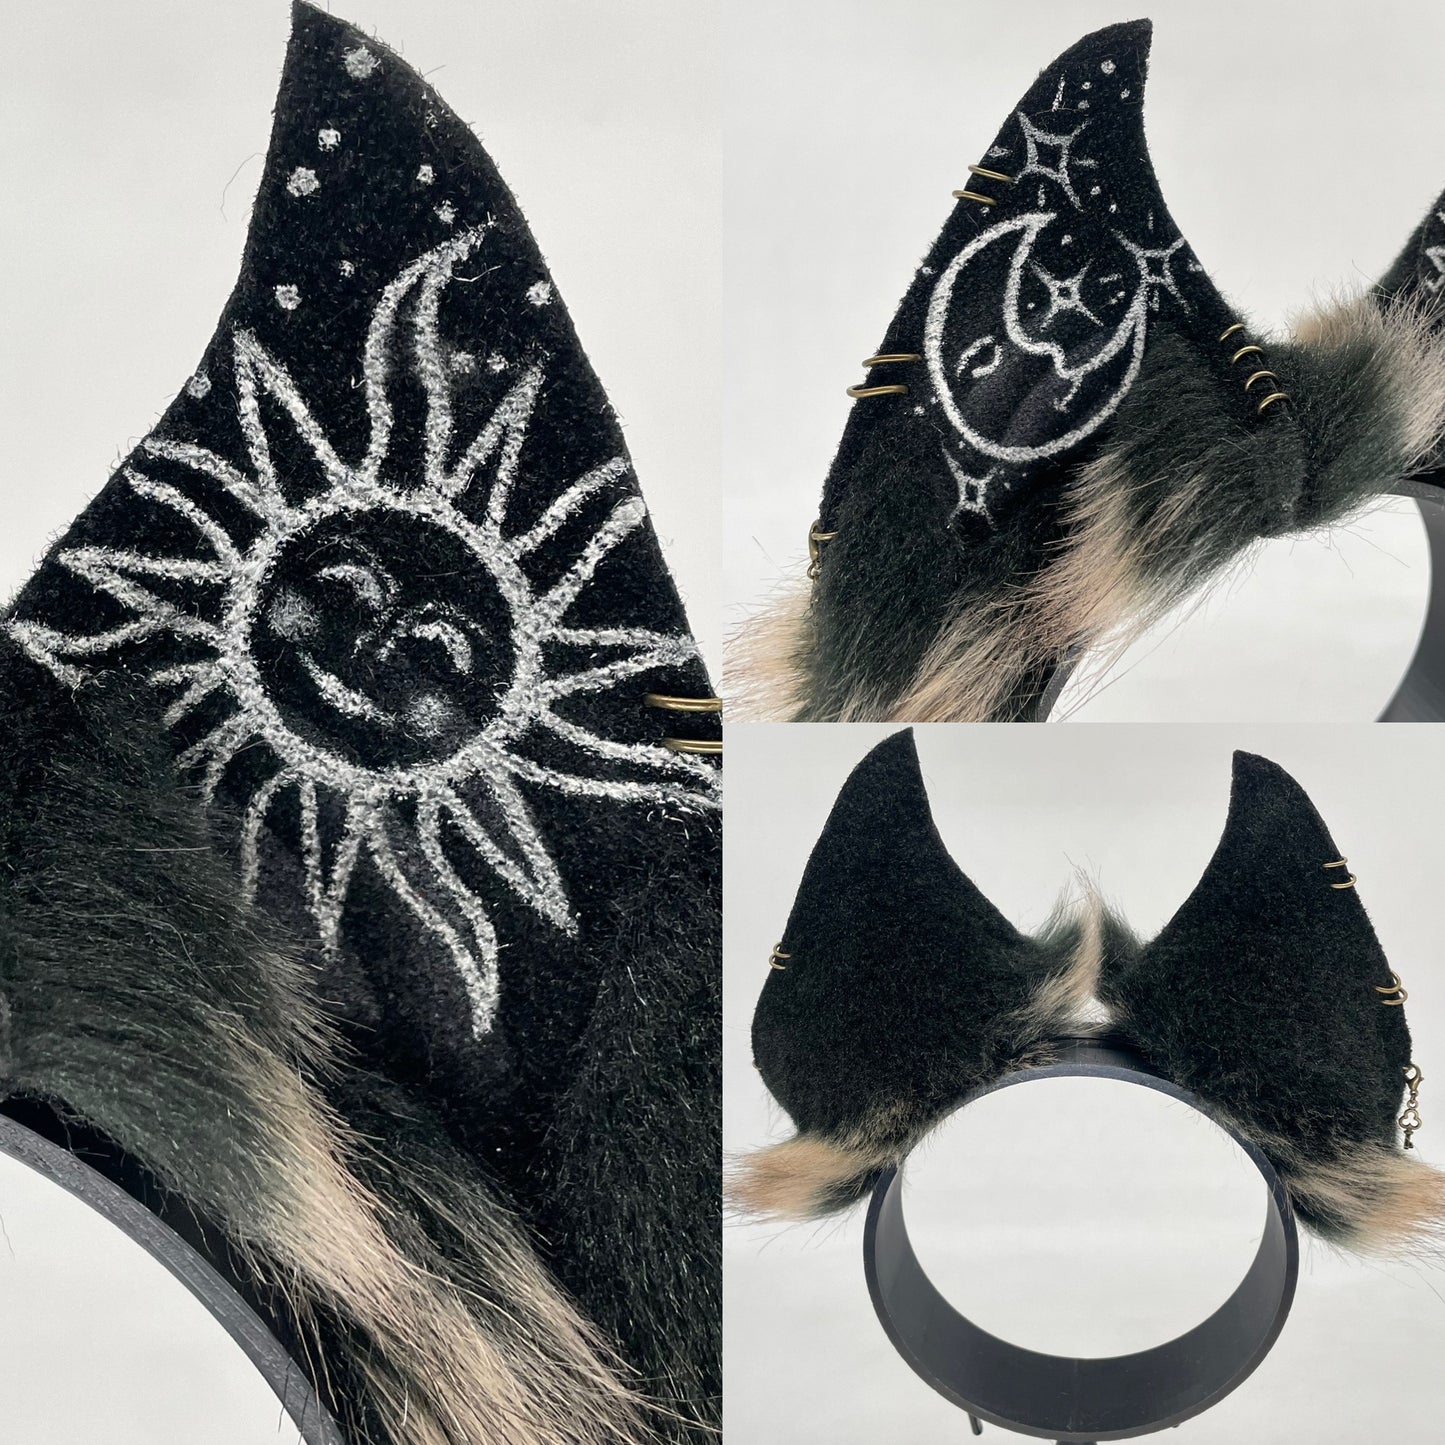 Tattooed Celestial Bat ears